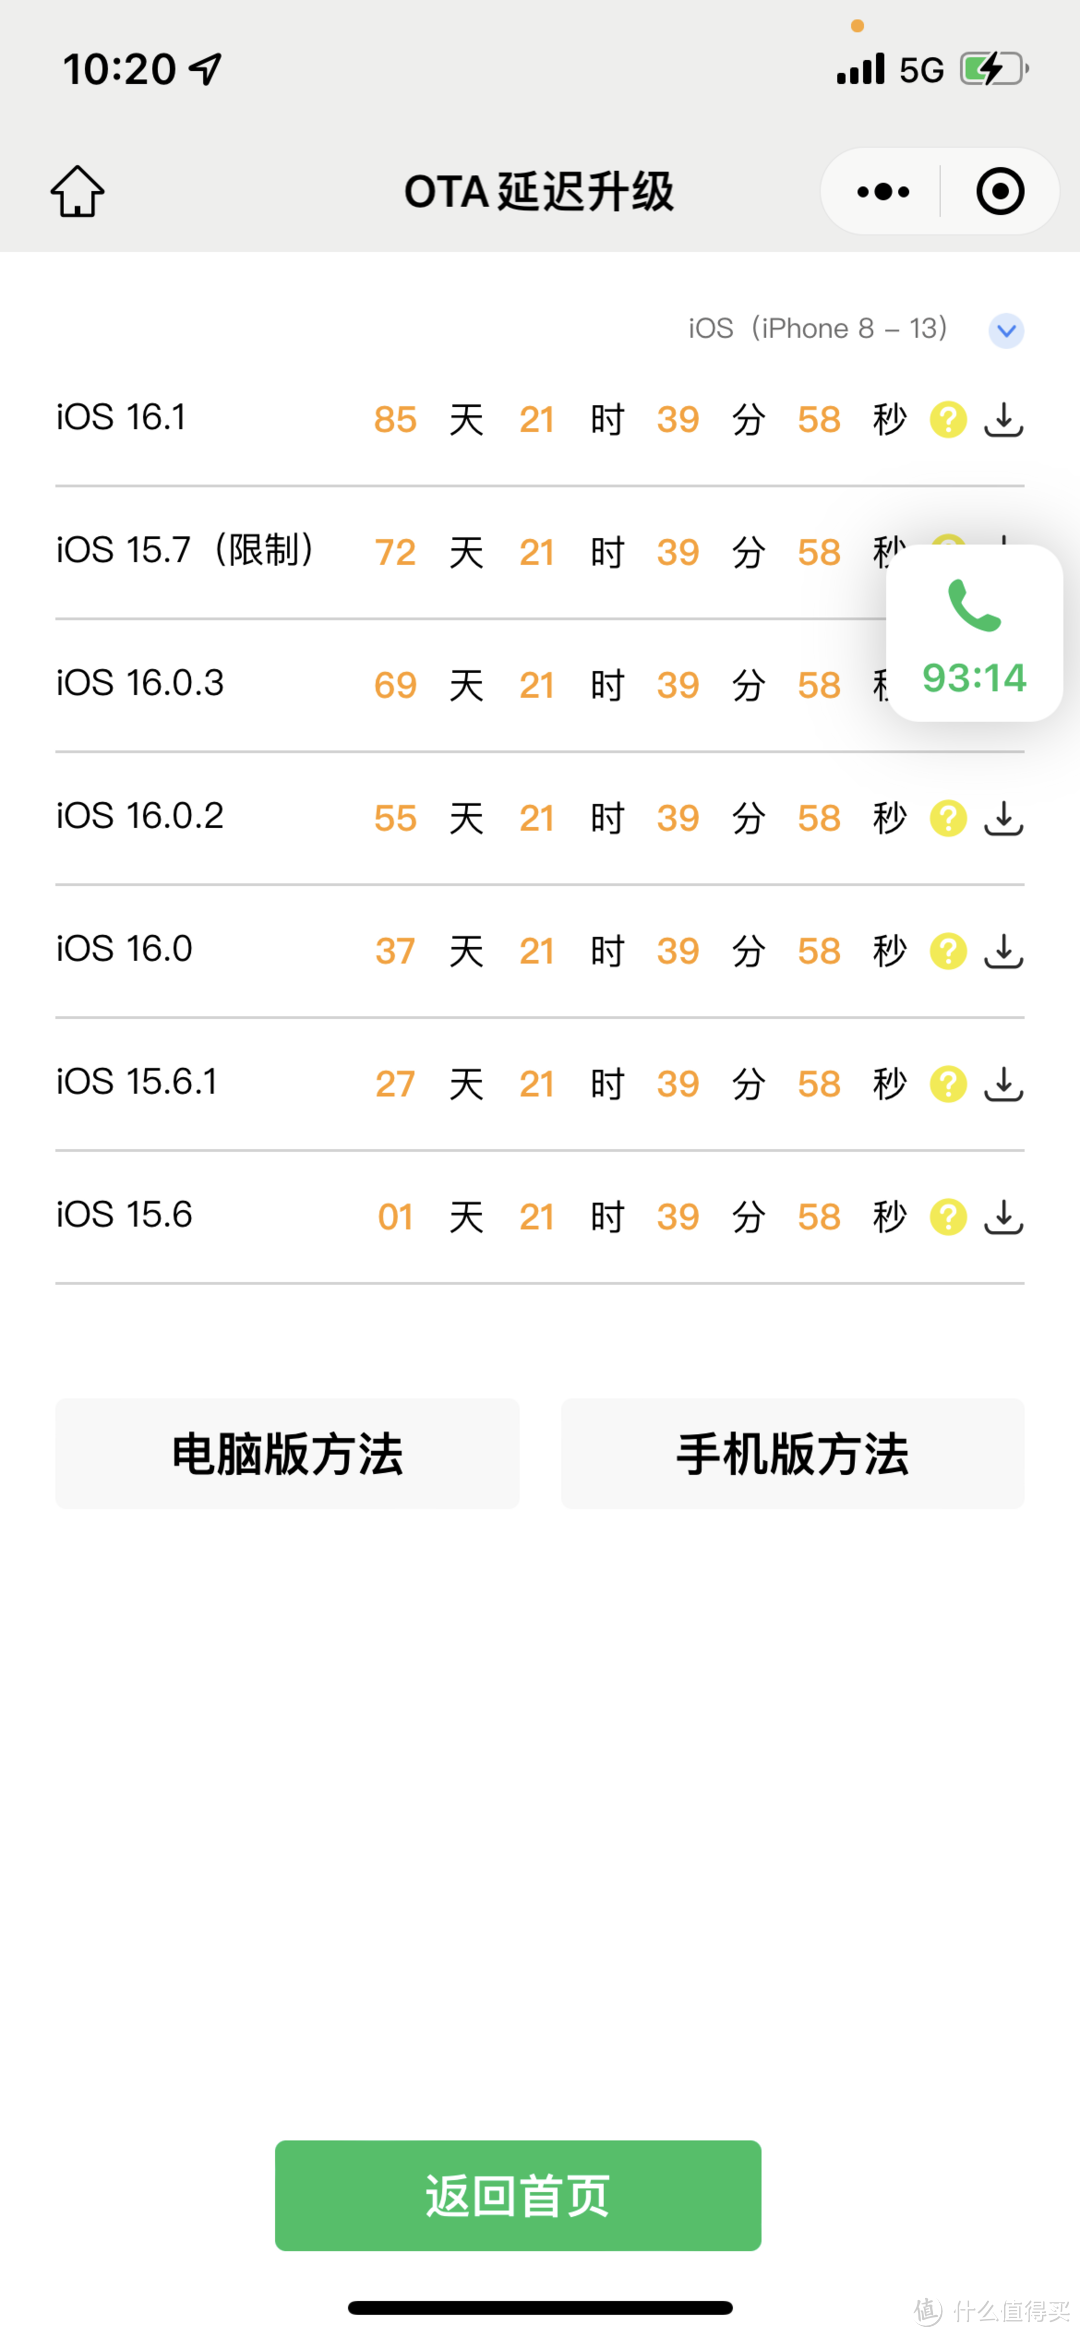 【iOS降级】手把手教你从iOS16.1降级到15.6